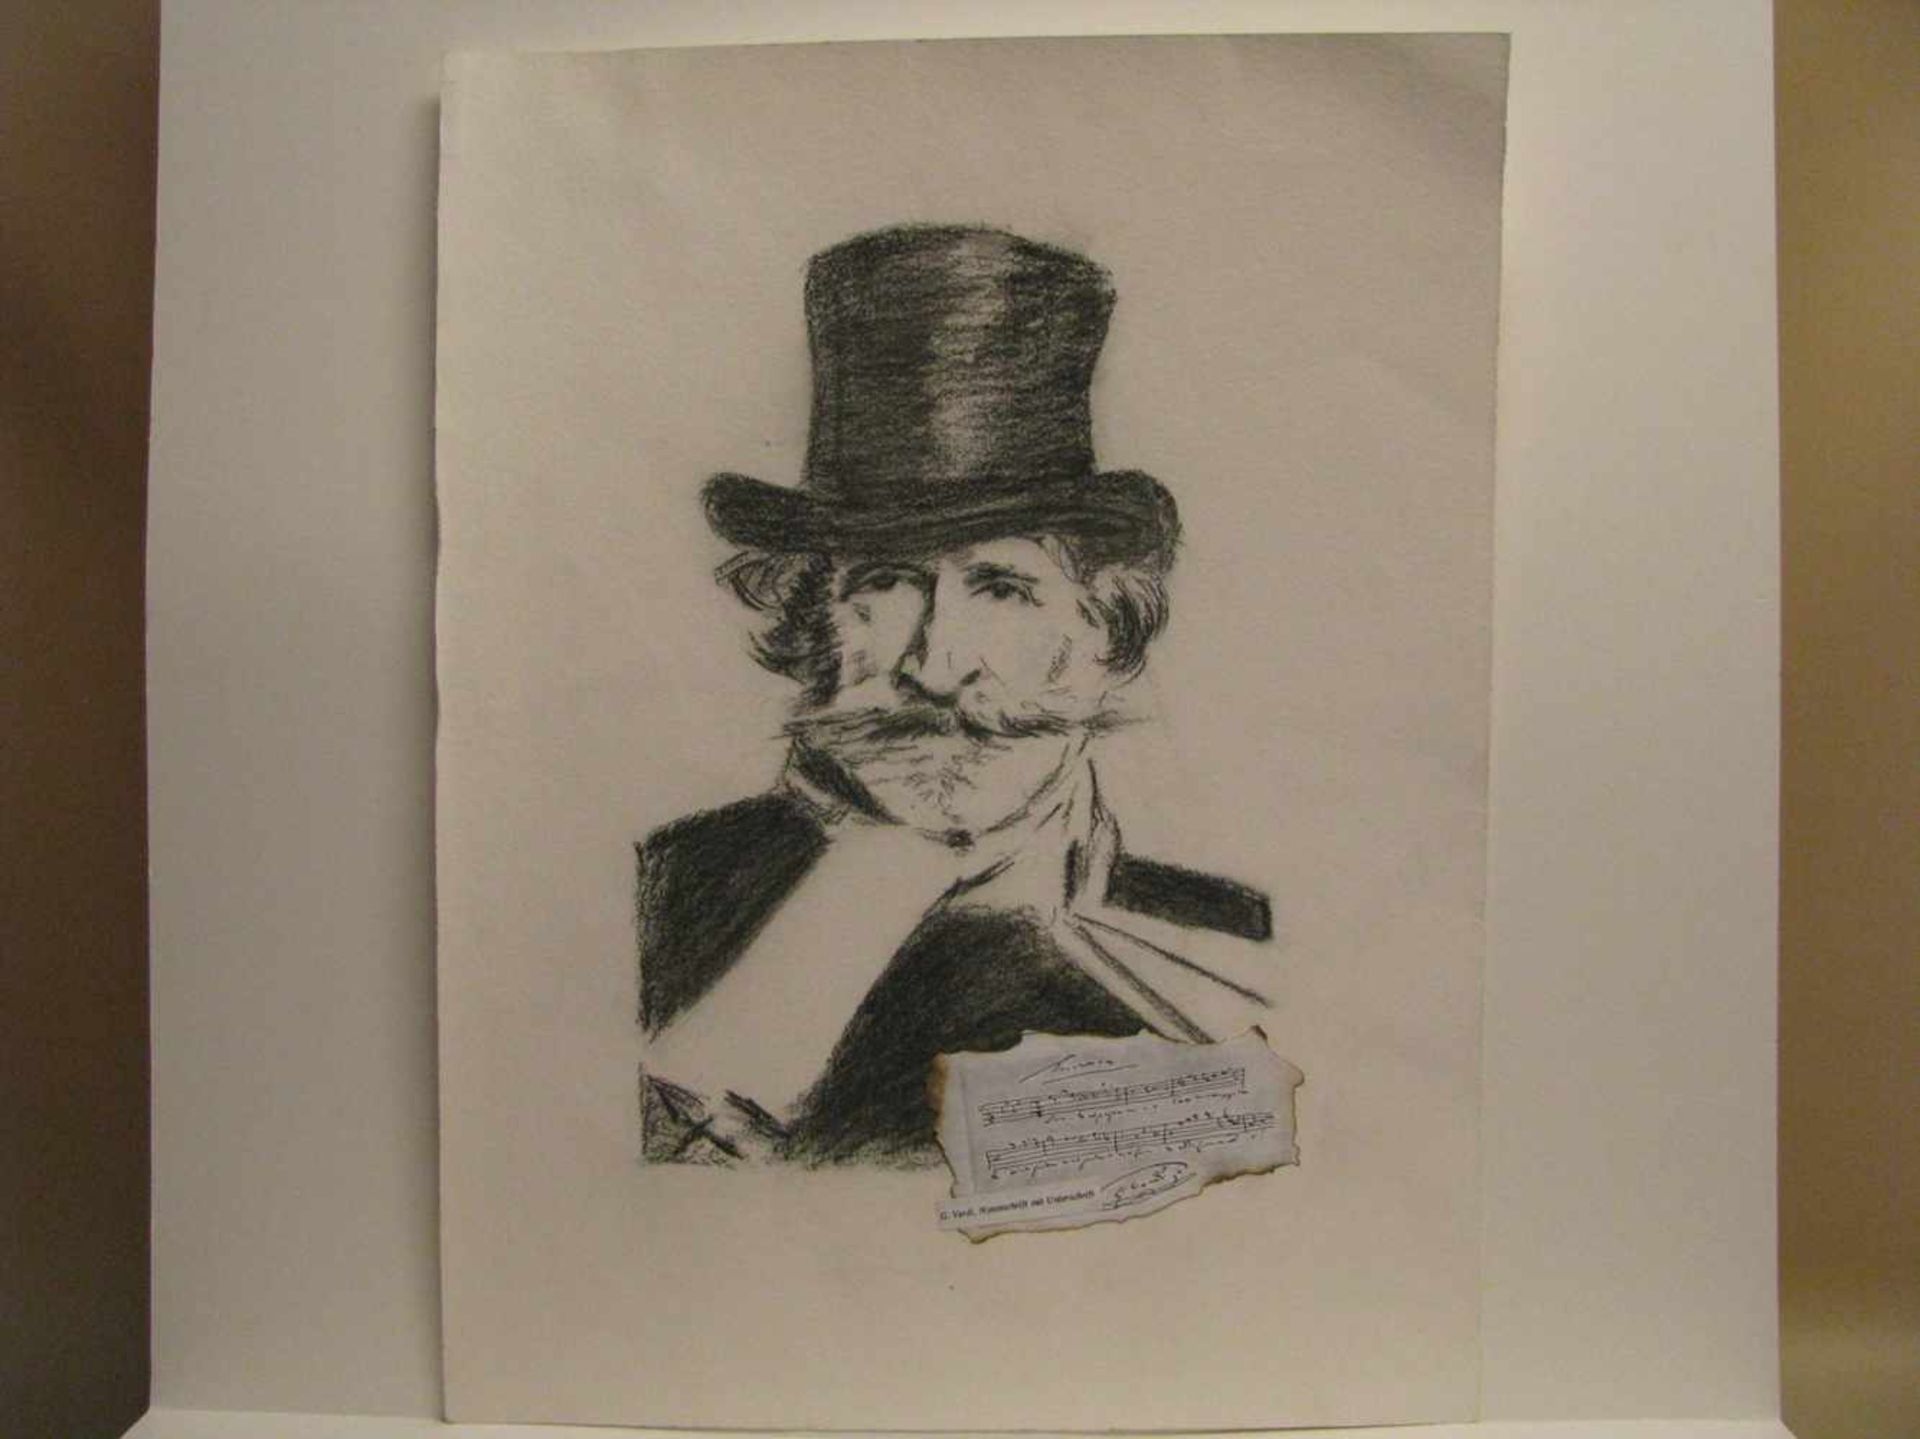 Unbekannt, "Giuseppe Verdi", Kohlezeichnung, 50 x 37,5 cm, o.R.- - -19.00 % buyer's premium on the